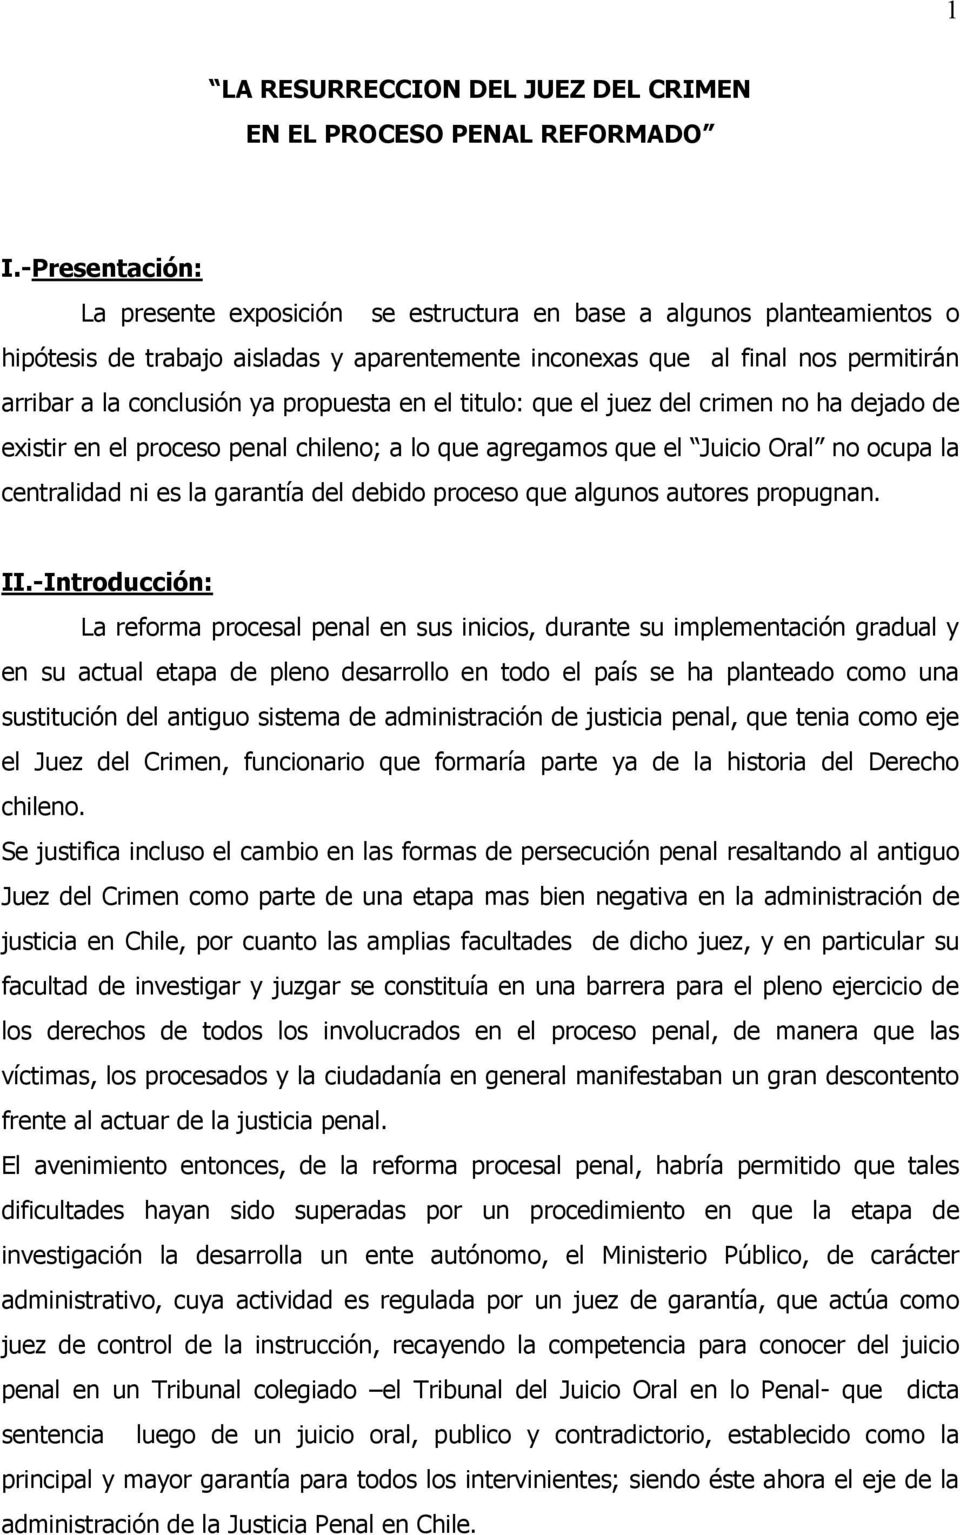 propuesta en el titulo: que el juez del crimen no ha dejado de existir en el proceso penal chileno; a lo que agregamos que el Juicio Oral no ocupa la centralidad ni es la garantía del debido proceso